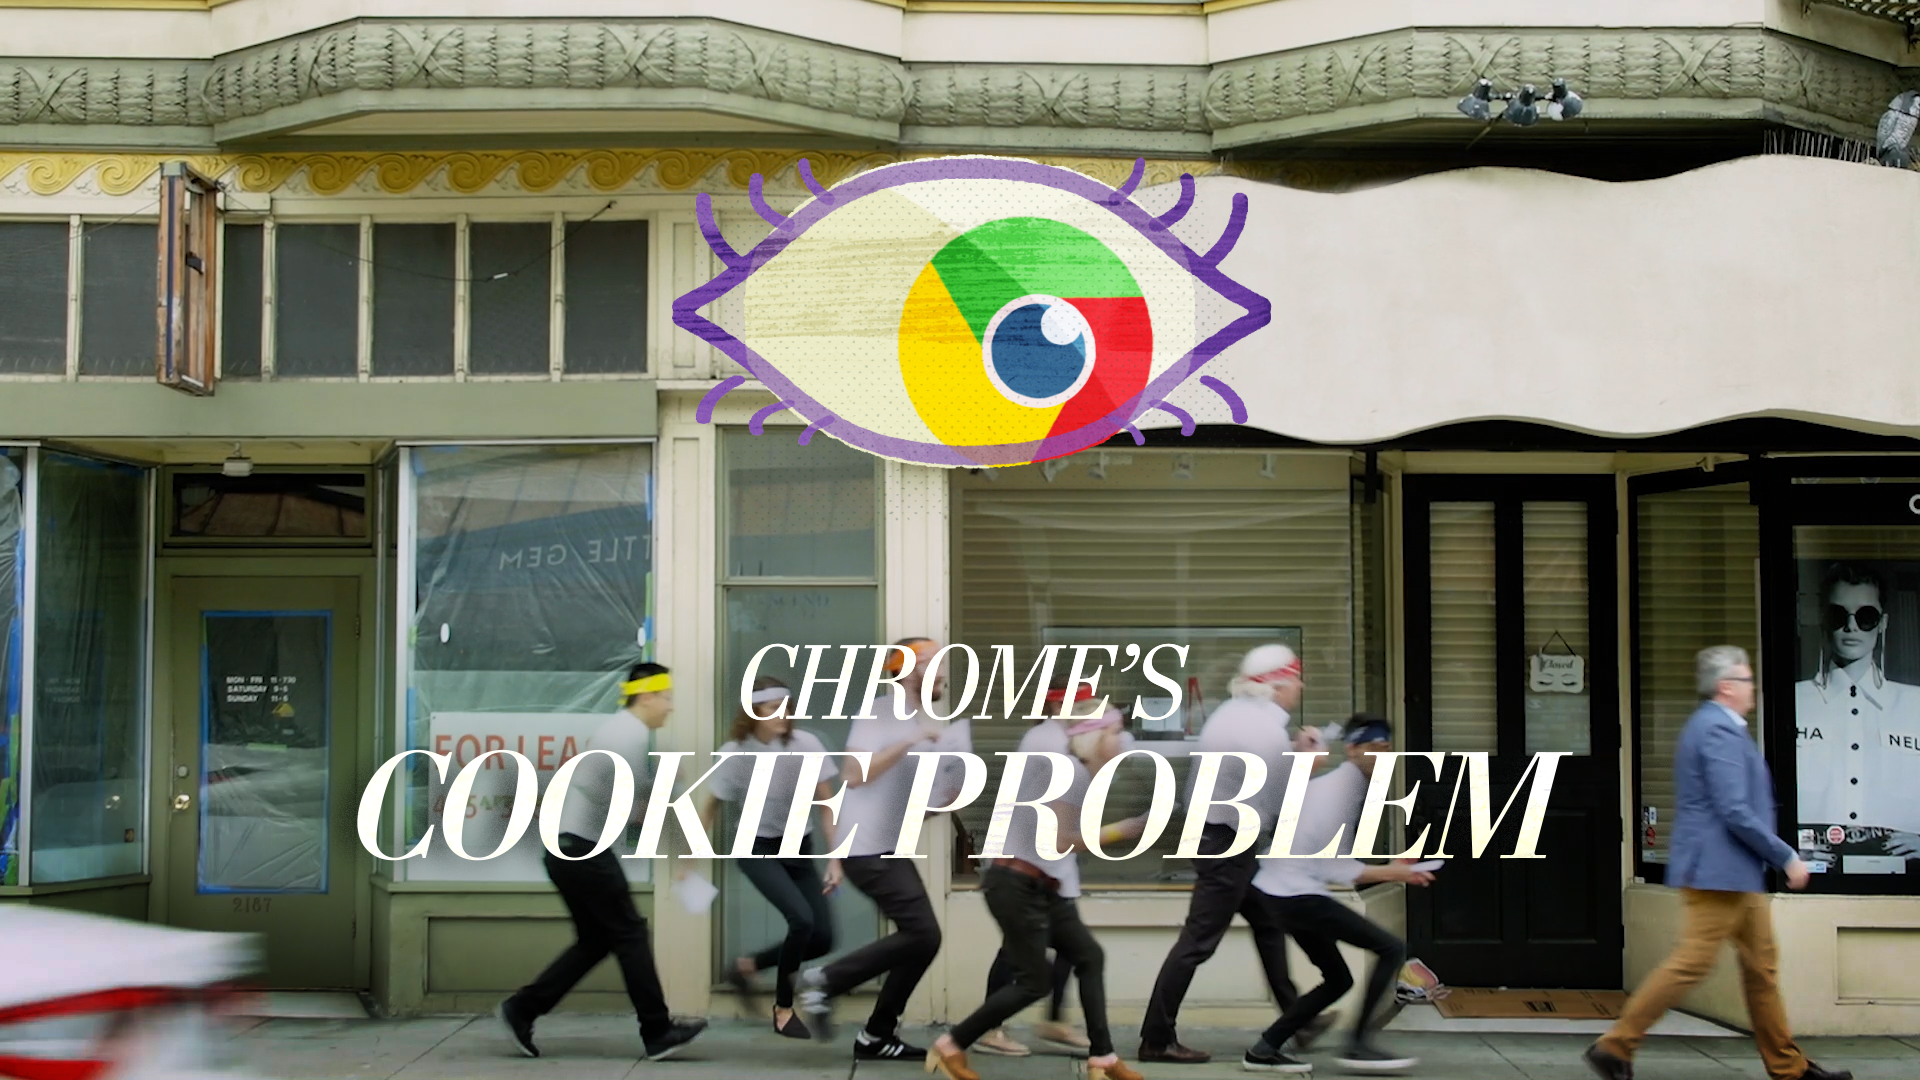 Trong mắt chuyên gia công nghệ, trình duyệt Google Chrome đã thành một phần mềm gián điệp - Ảnh 1.